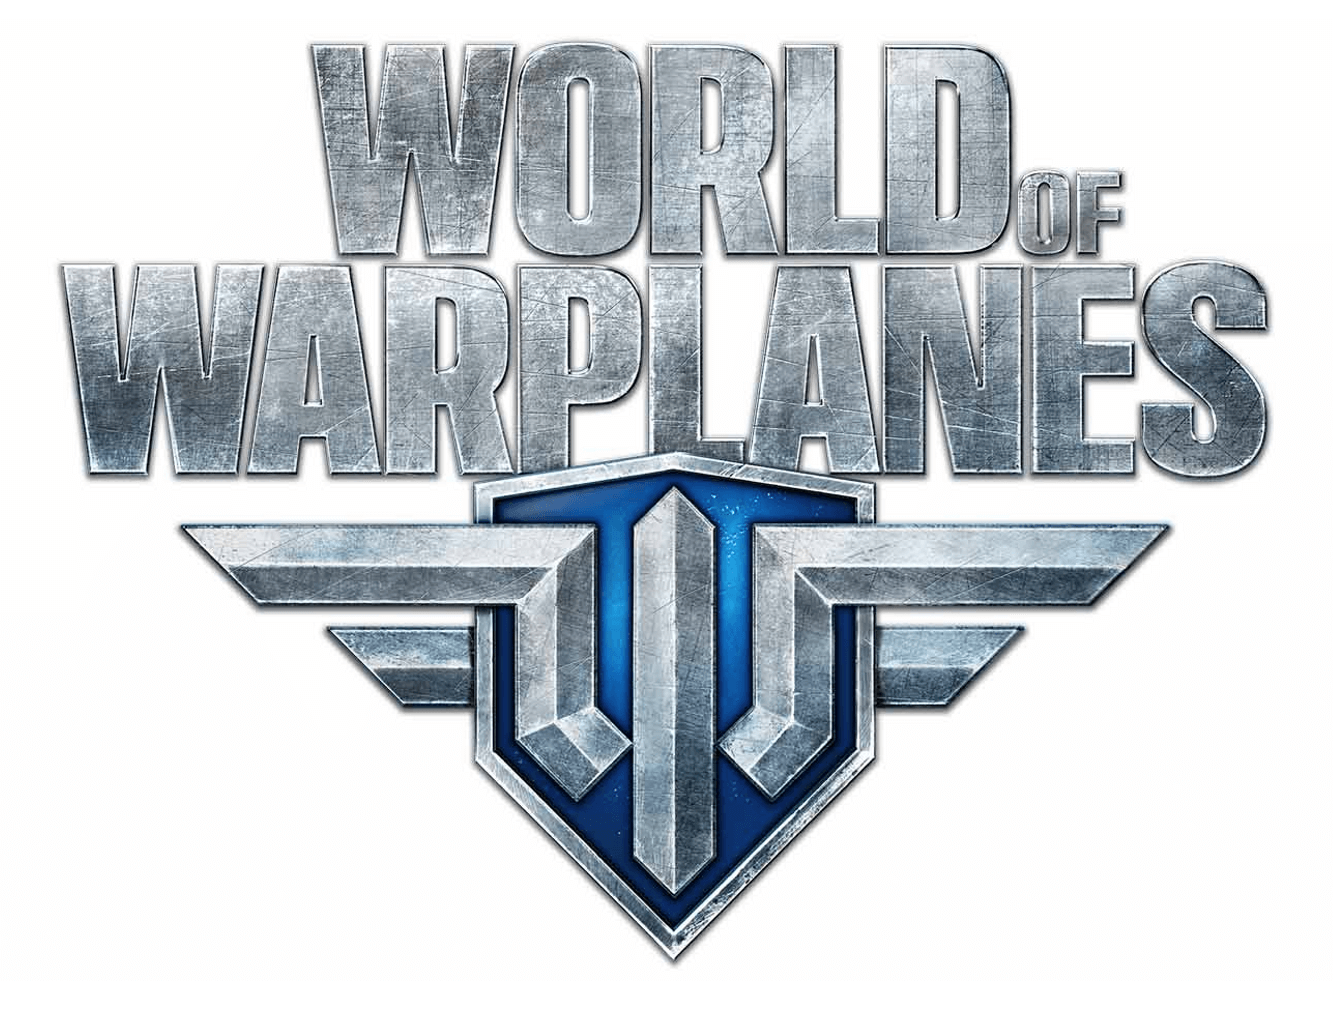 World of Warplanes logo, logotype